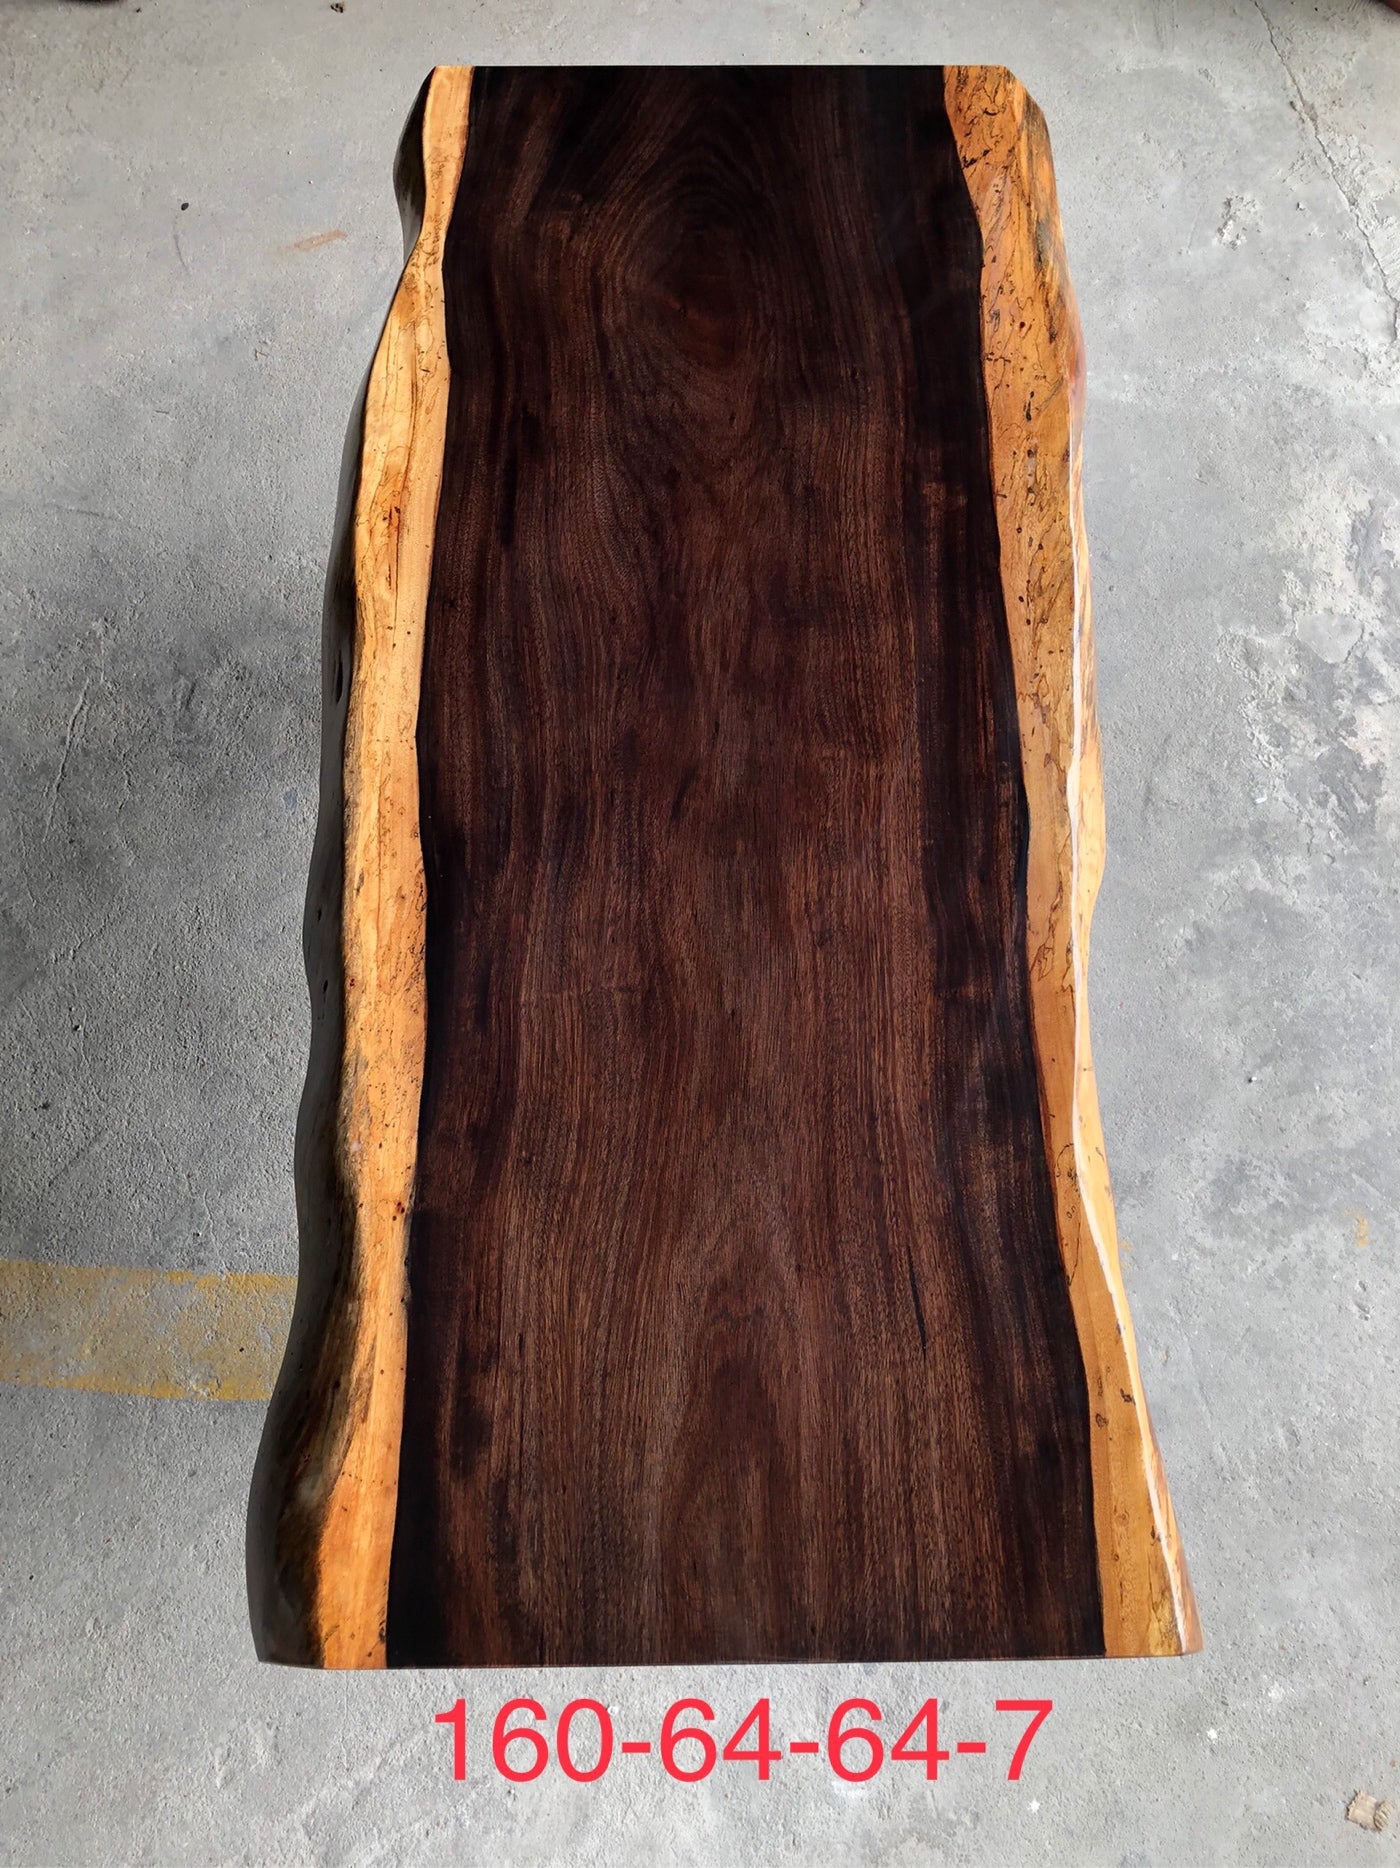 ألواح الخشب، بلاطة الحافة الحية، طاولة بلاطة الخشب في غرب أفريقيا